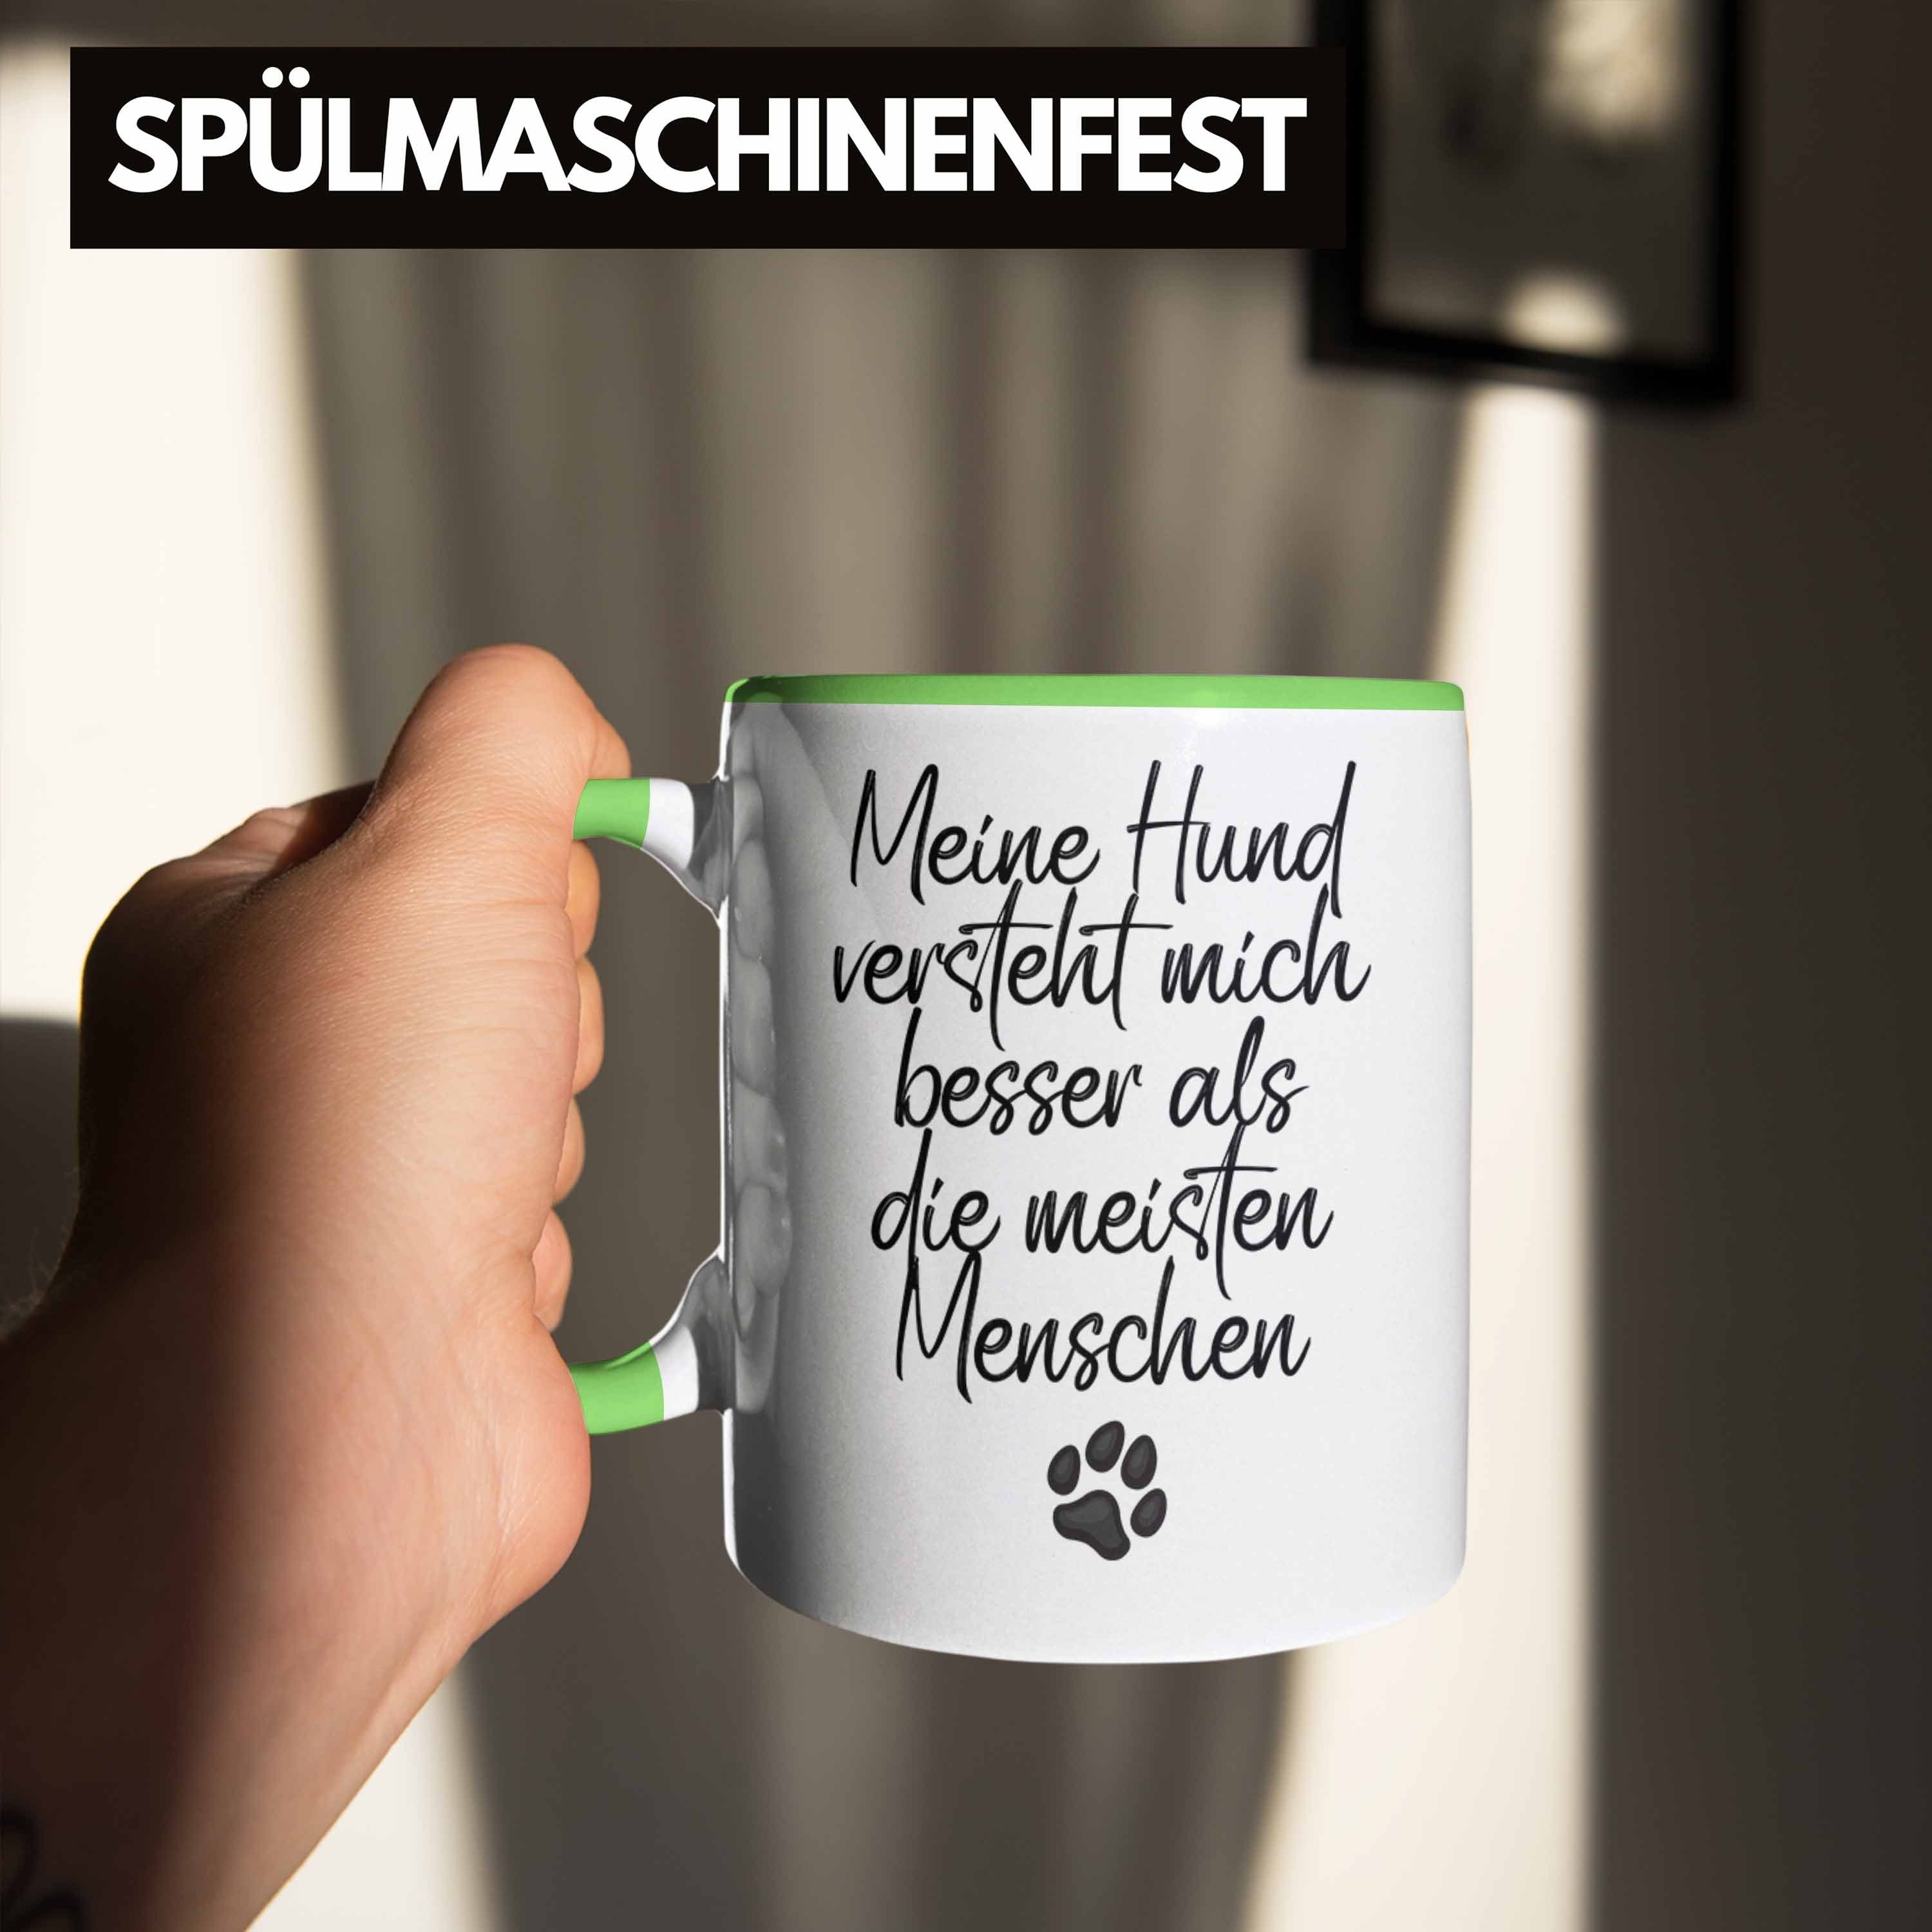 Trendation Tasse Hundebesitzer Kaffee-Becher Mein Hund Versteht Geschenk Bes Mich Tasse Grün